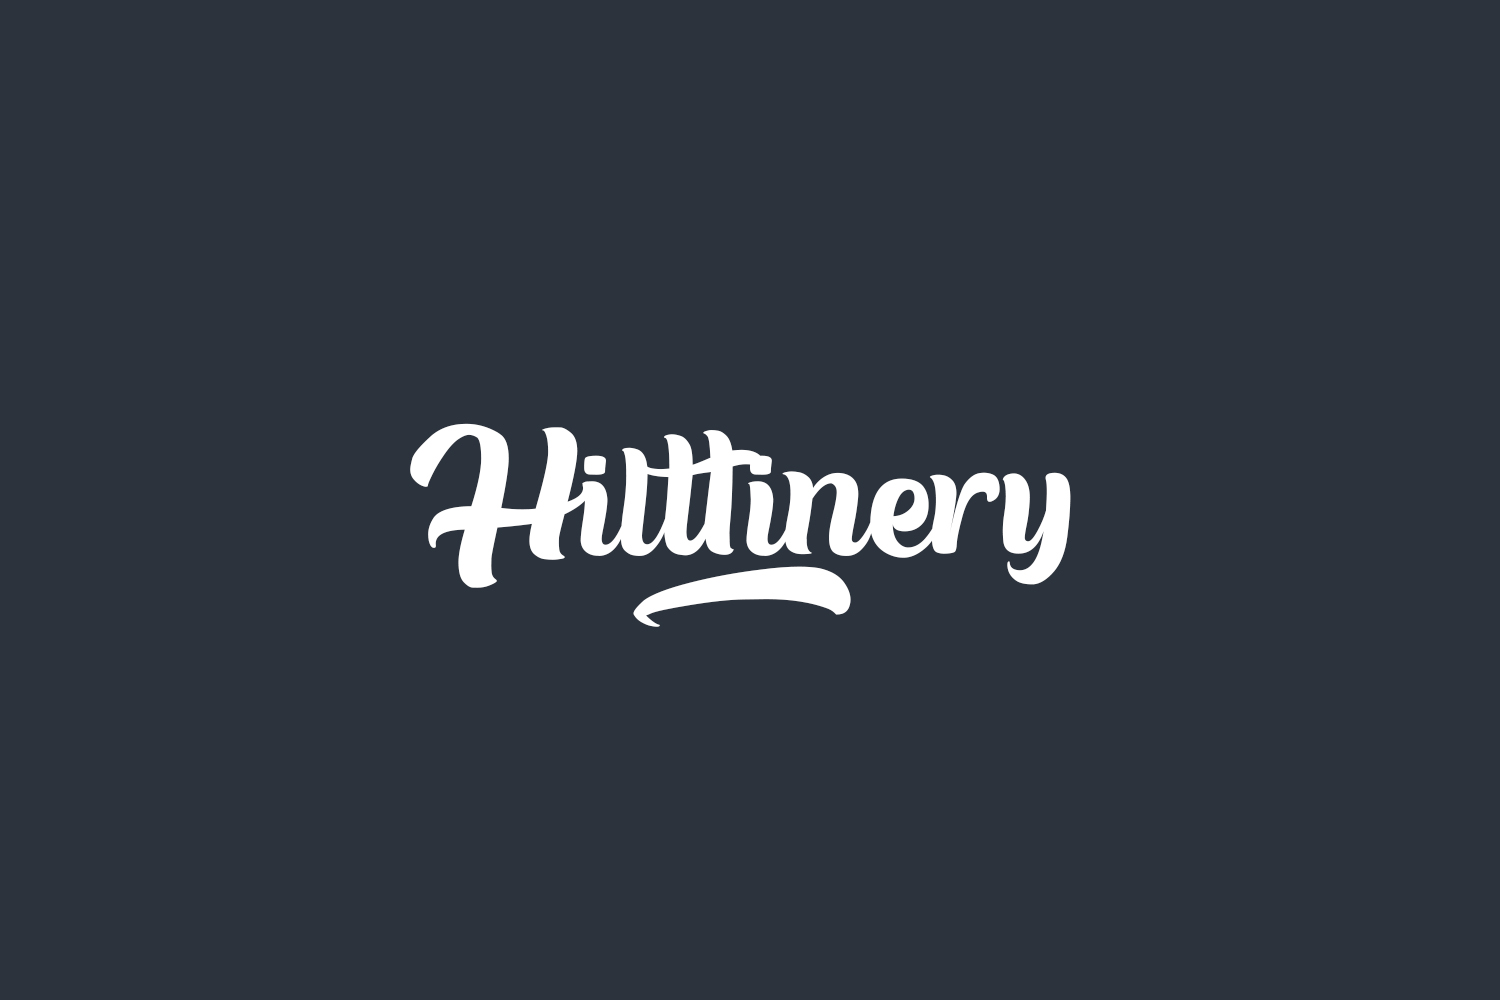 Hilttinery